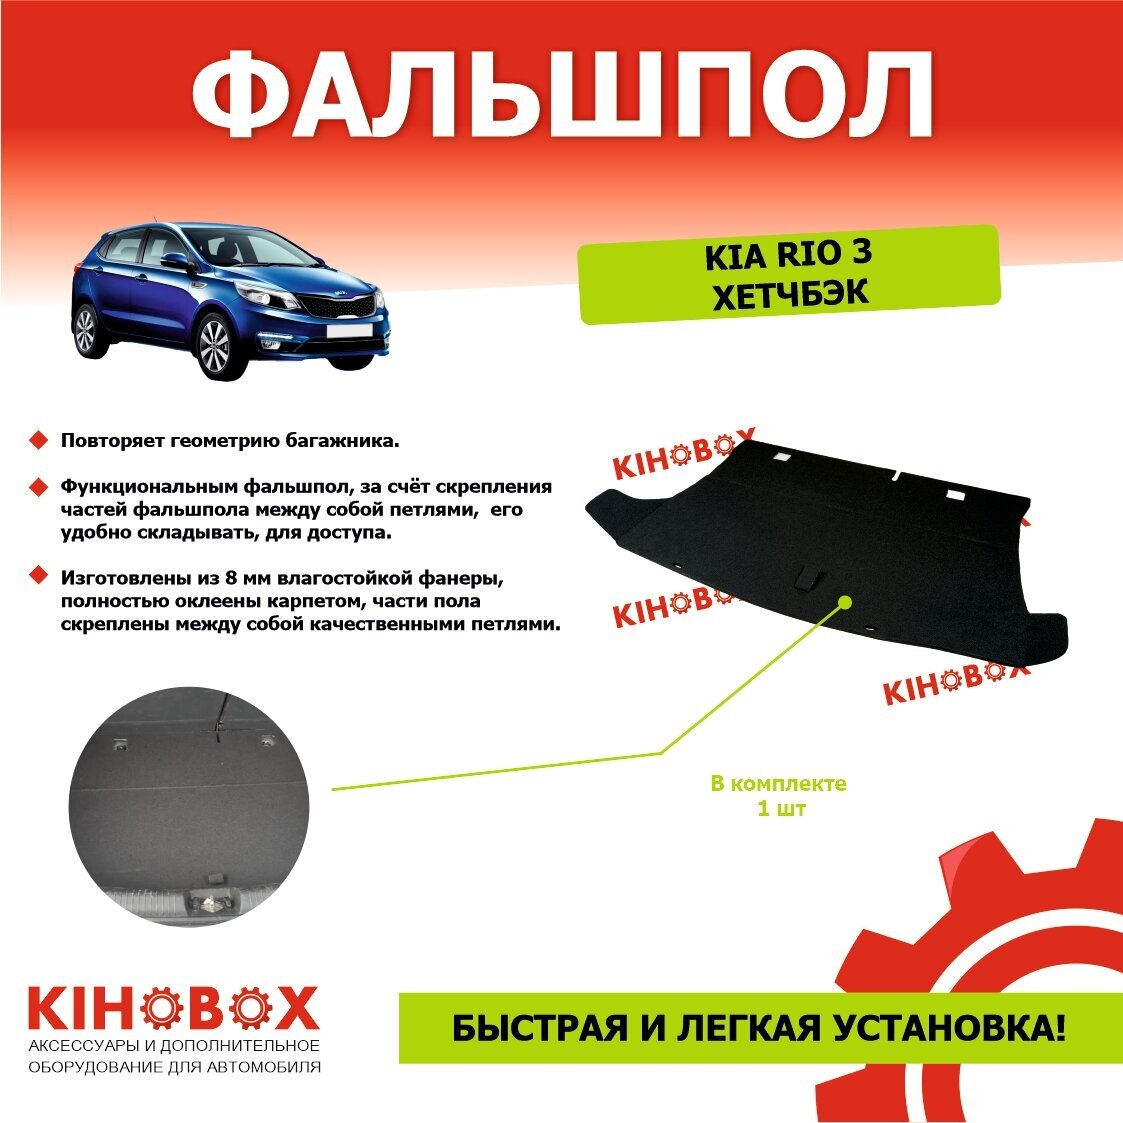 Фальшпол для КИА РИО 3 поколение (хэтчбек) Kia RIO 3, черный Влагостойкая фанера 12мм обшита карпетом KIHOBOX ART 3503202